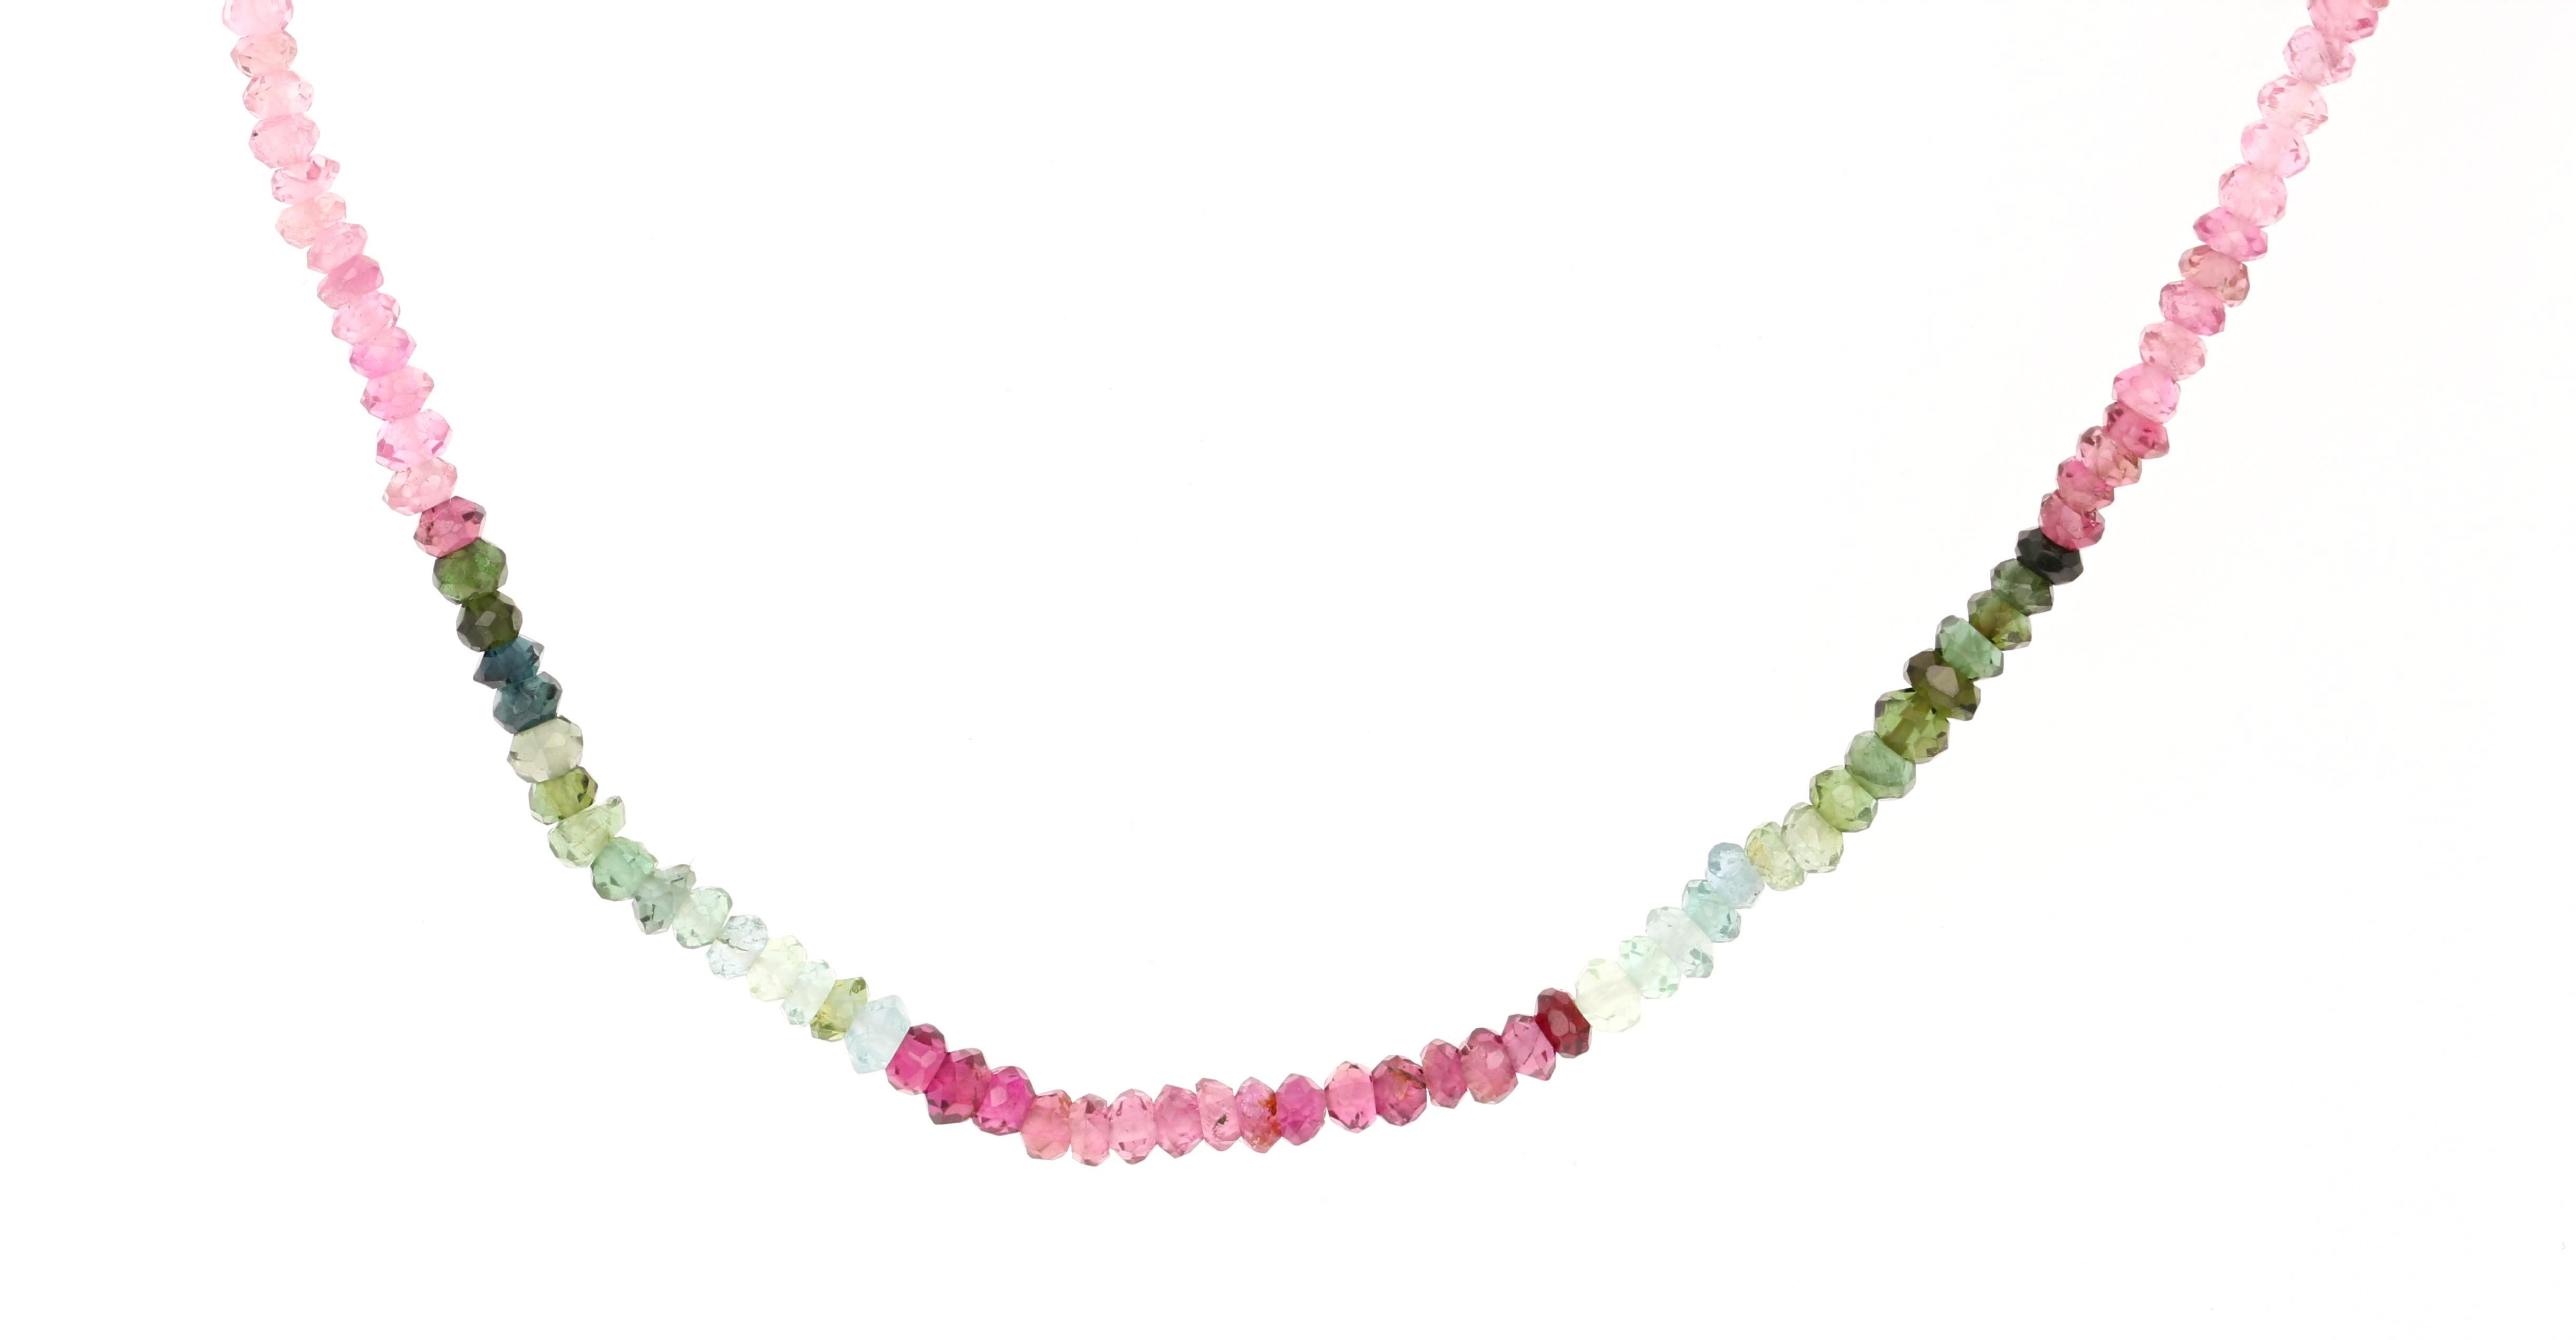 Ce collier de perles fines, simple et charmant, est composé de tourmalines naturelles multicolores. Il a un fermoir en or jaune 18K. Ce collier polyvalent peut être porté seul ou servir de chaîne pour d'autres pendentifs. 

Il mesure 14 pouces de